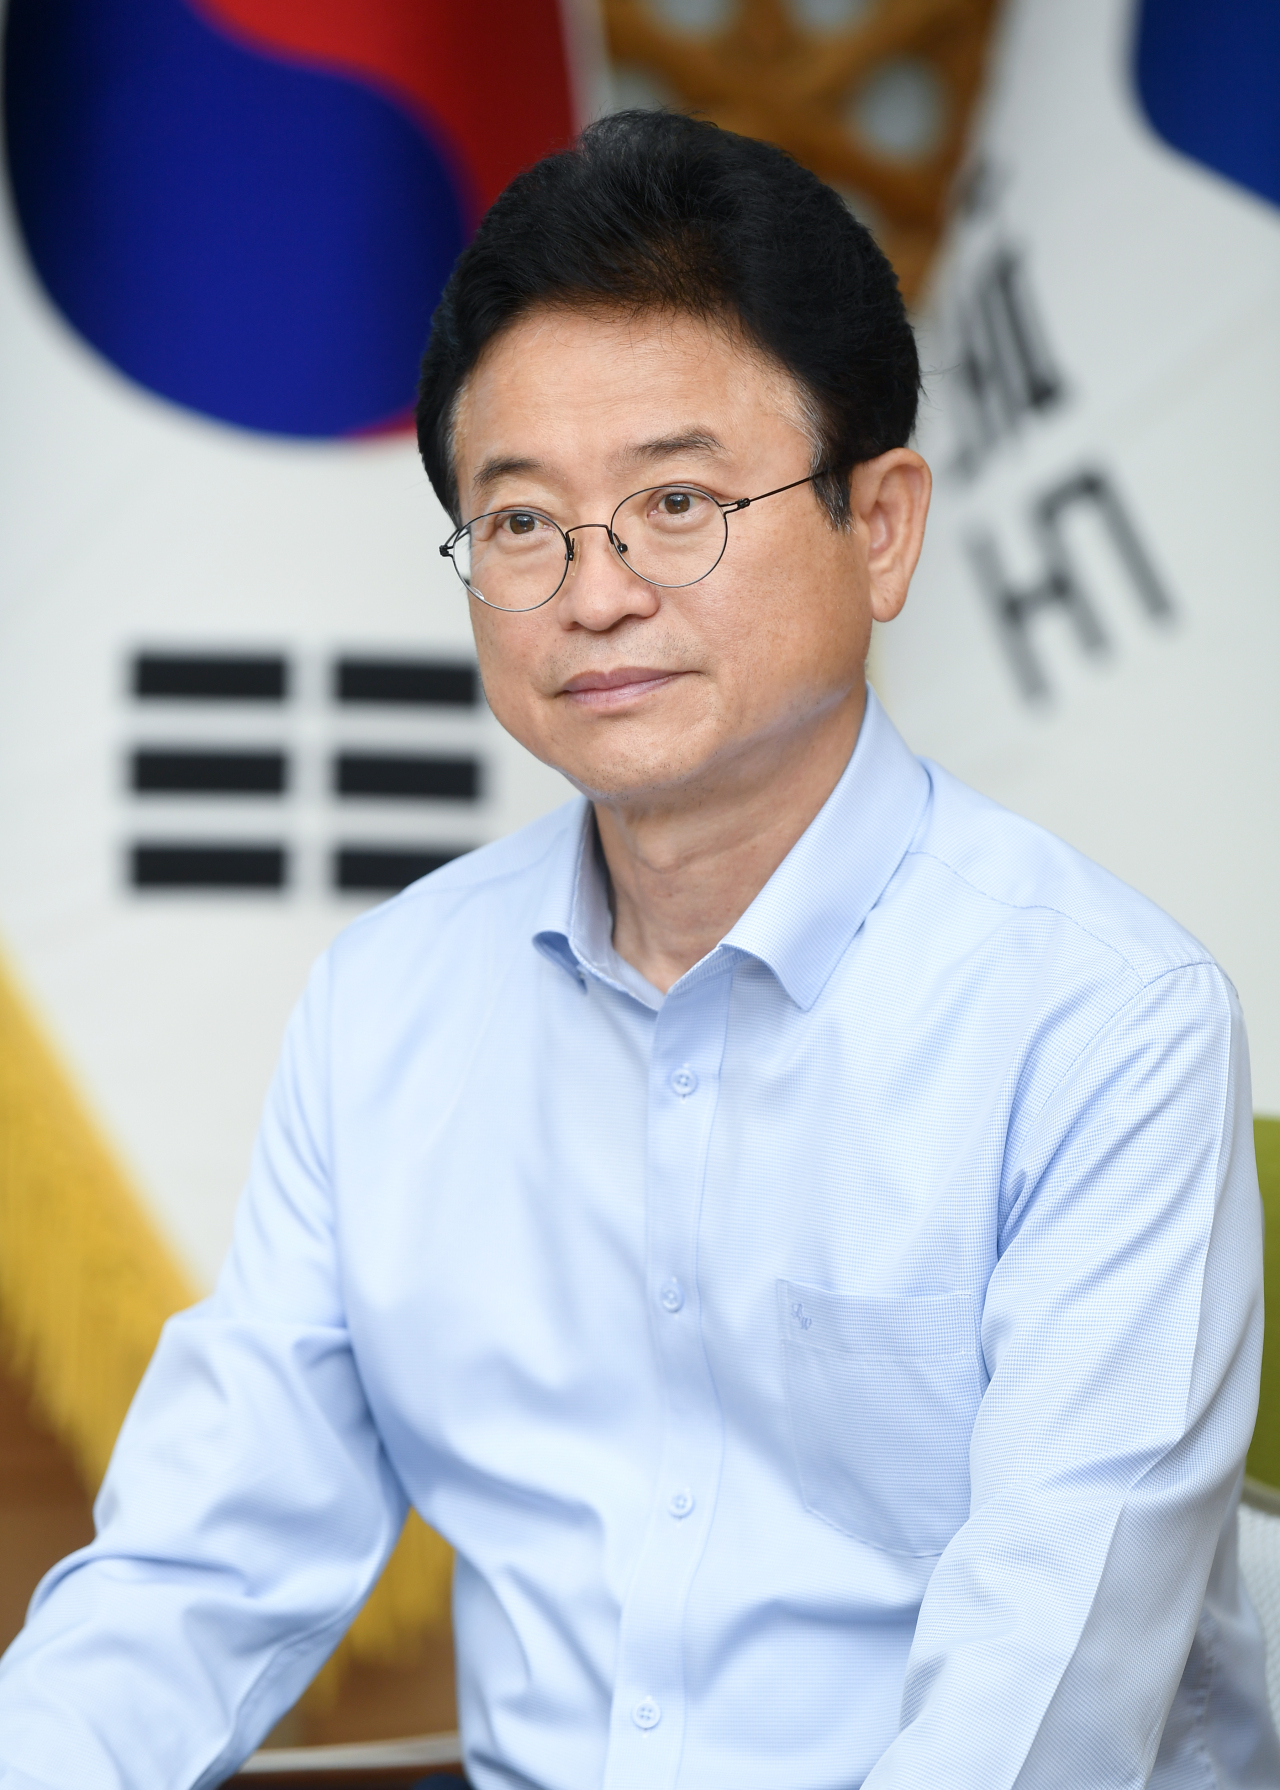 Lee Cheol-woo, governor of North Gyeongsang Province (North Gyeongsang Province government)